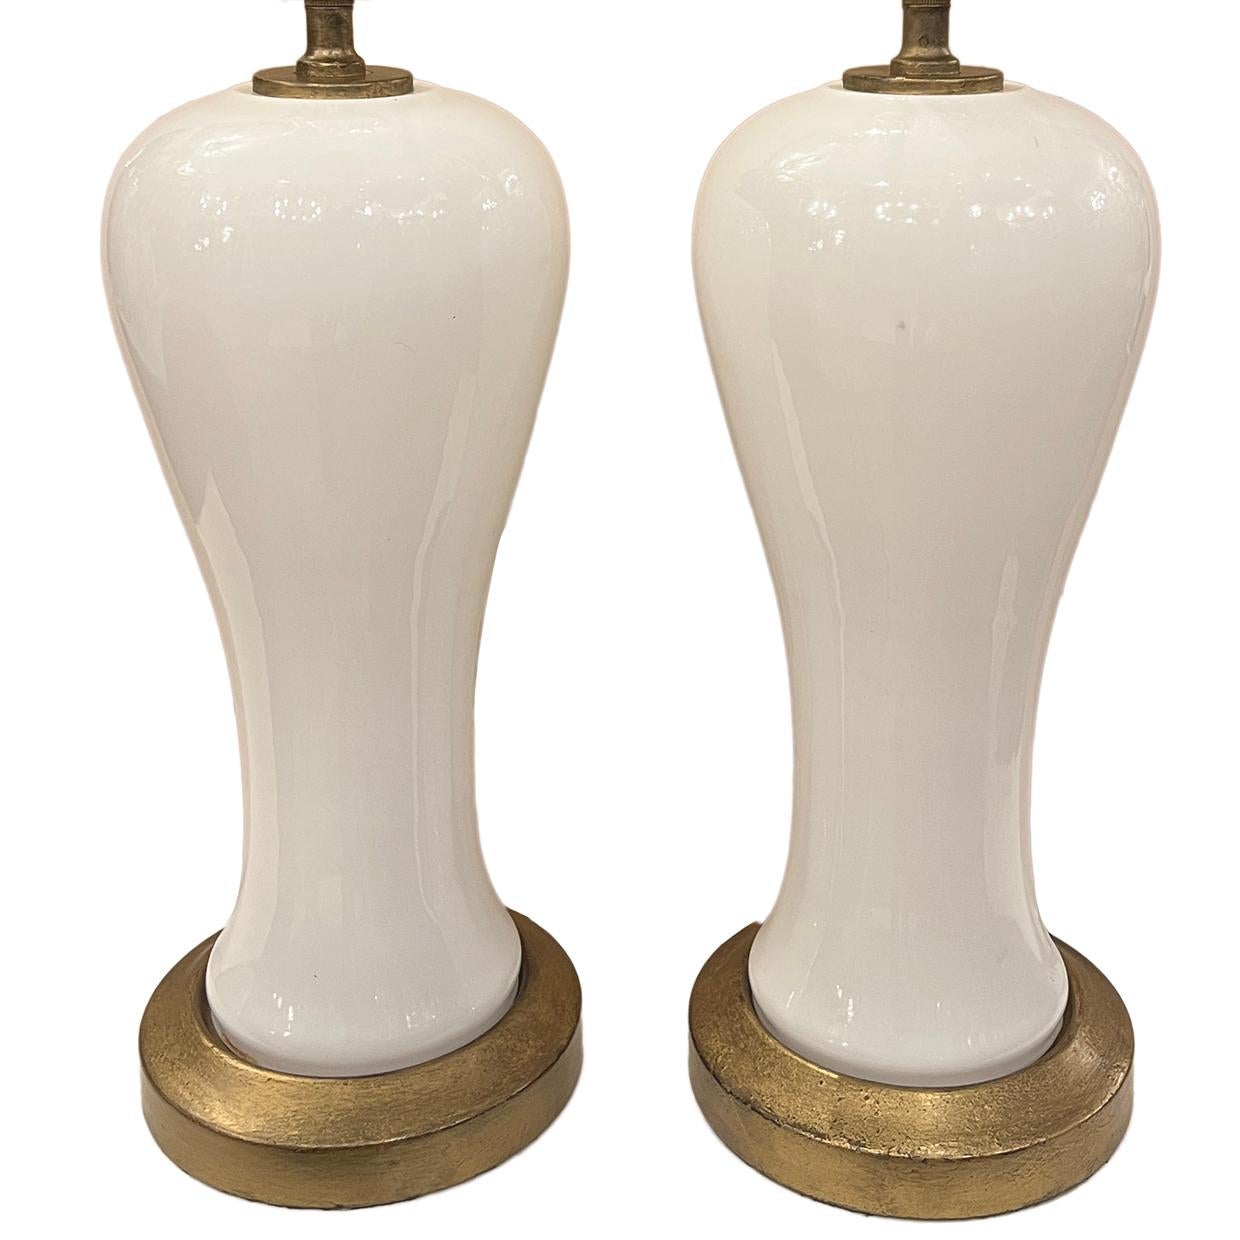 Une paire de lampes de table françaises des années 1960 en opaline avec des bases dorées.

Mesures :
Hauteur du corps : 17,5